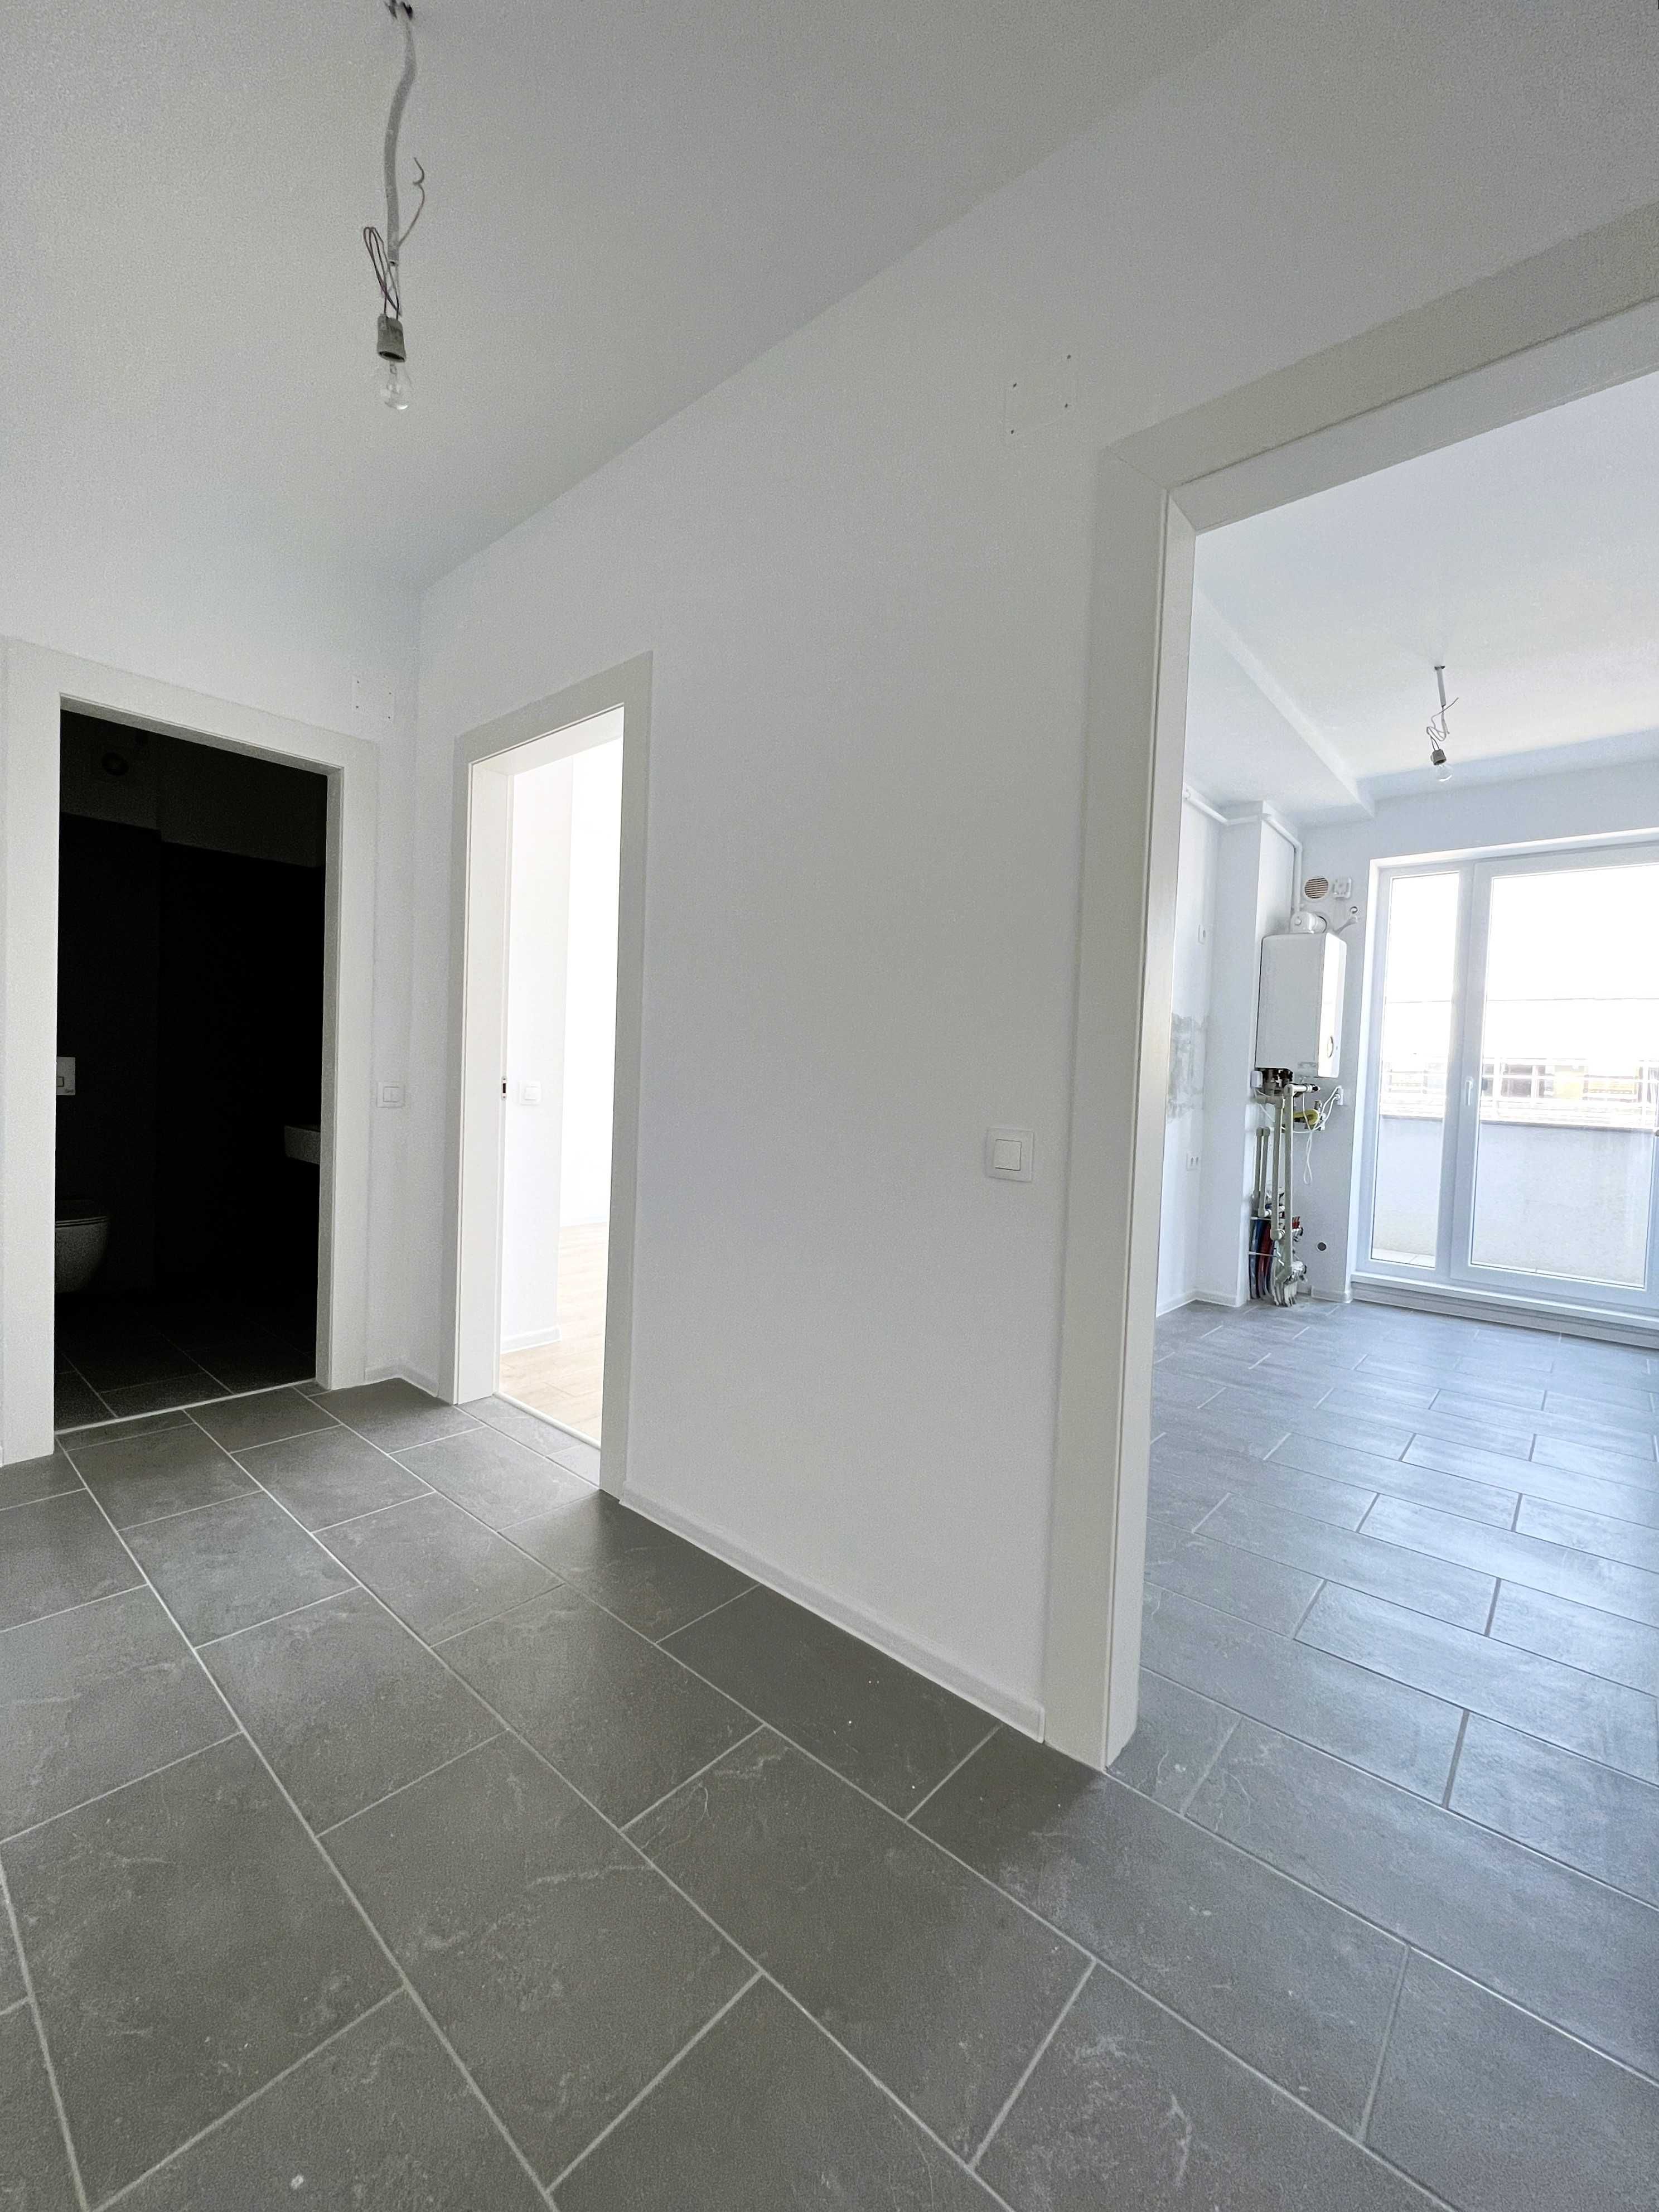 Apartament nou 2 camere-53 mp Utili - Finalizat - Atria Sector 1